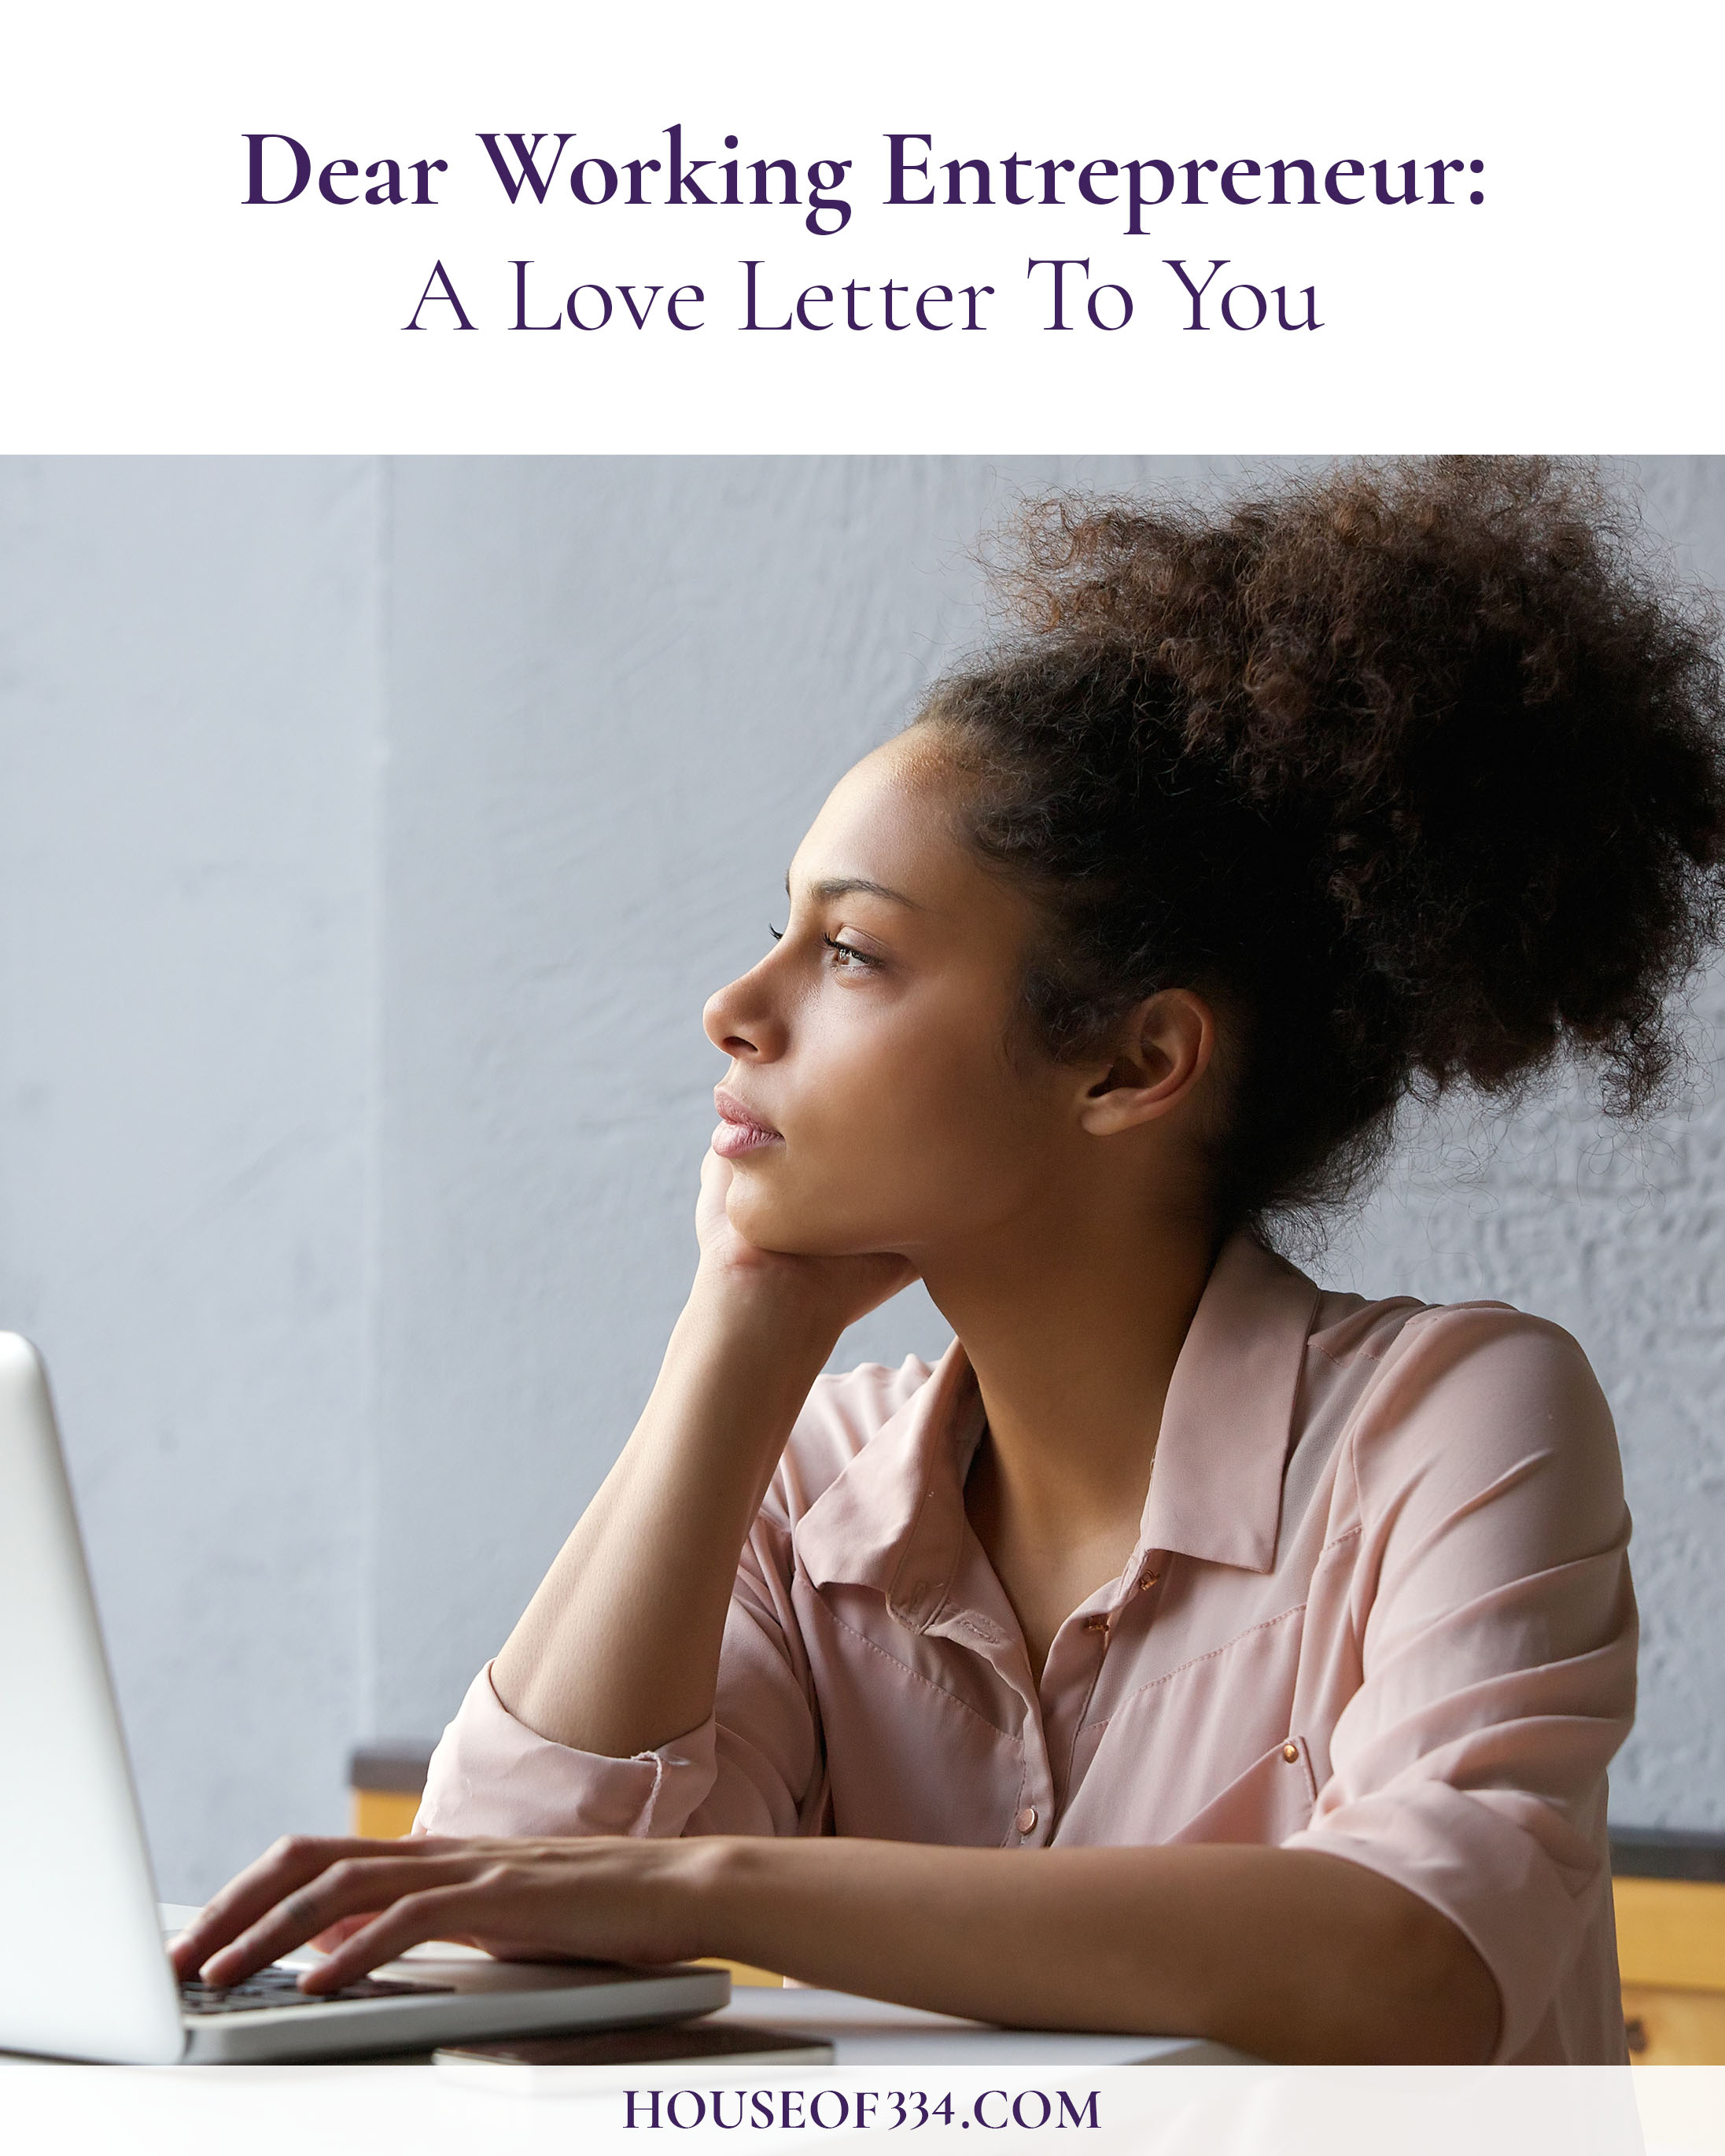 House of 334 Love Letter Blog Post